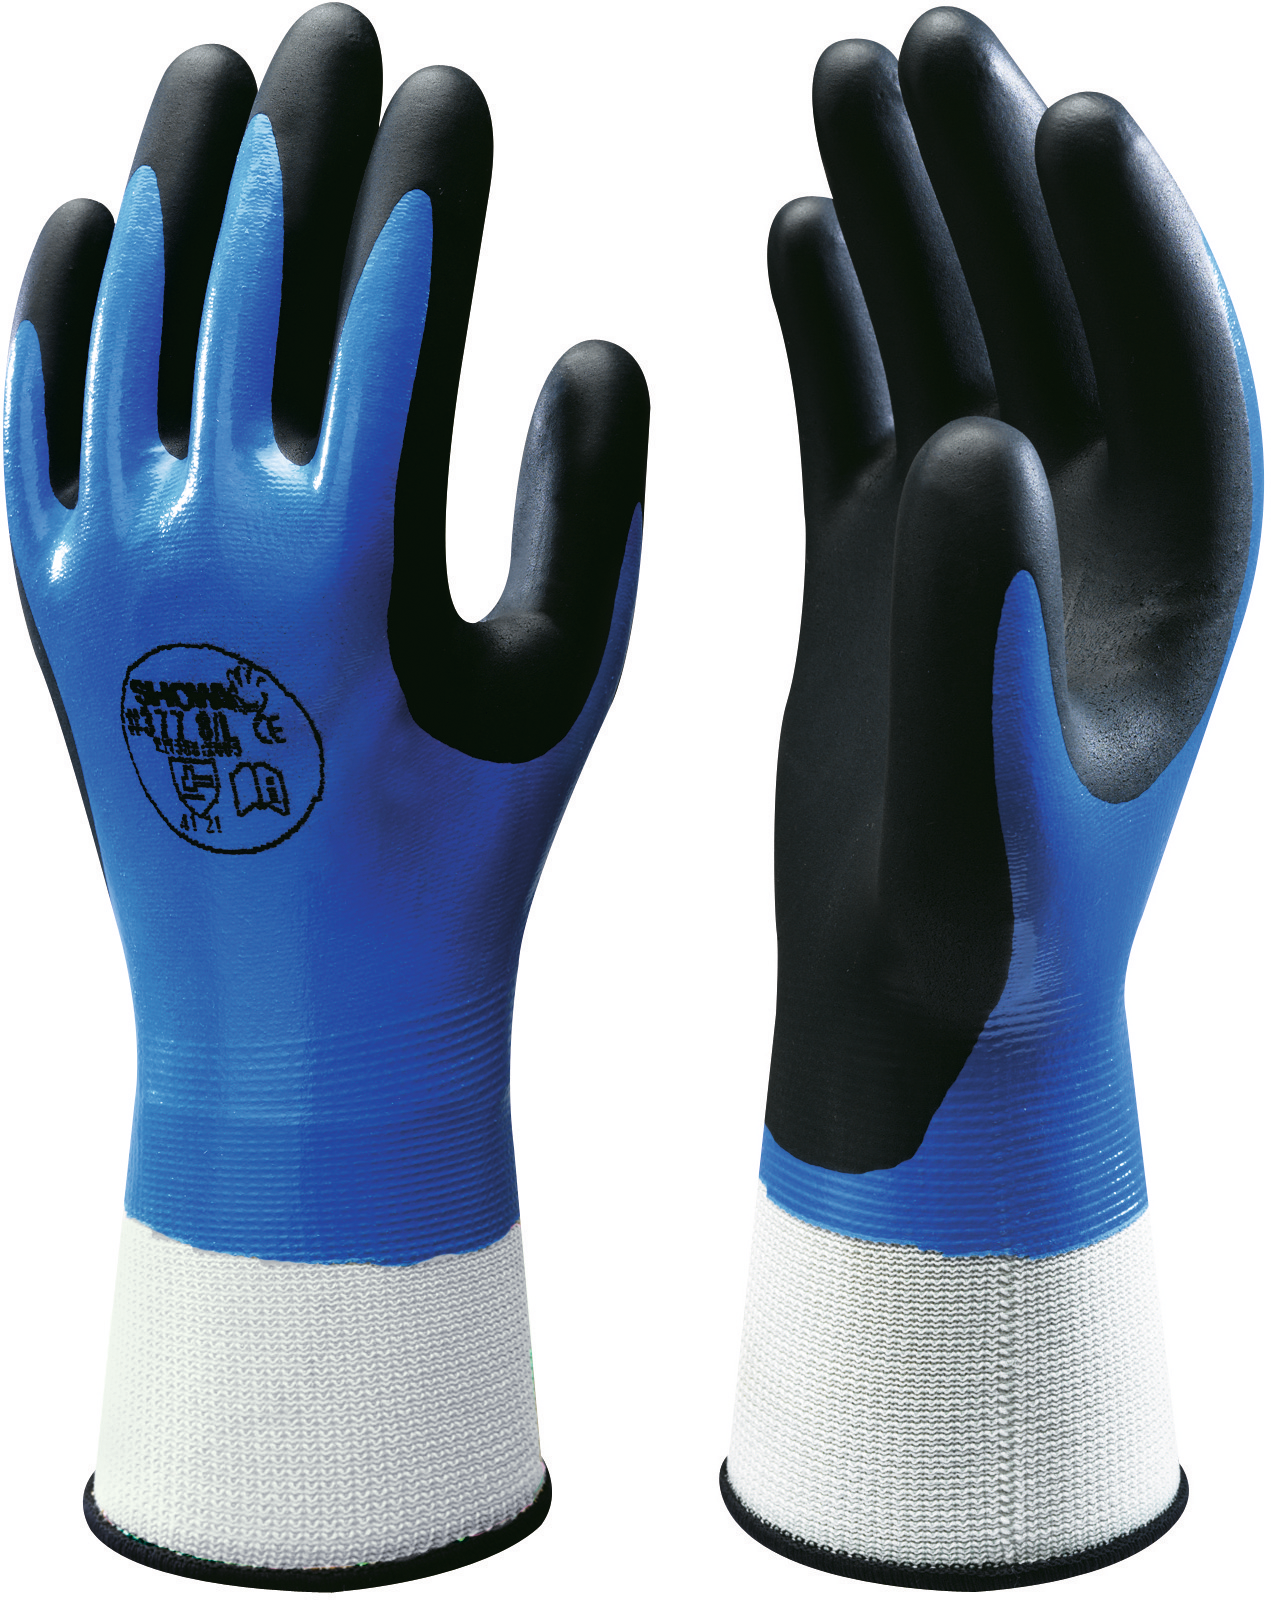 Handschuh Nitril "Der Robuste" blau/schwarz Gr. 8